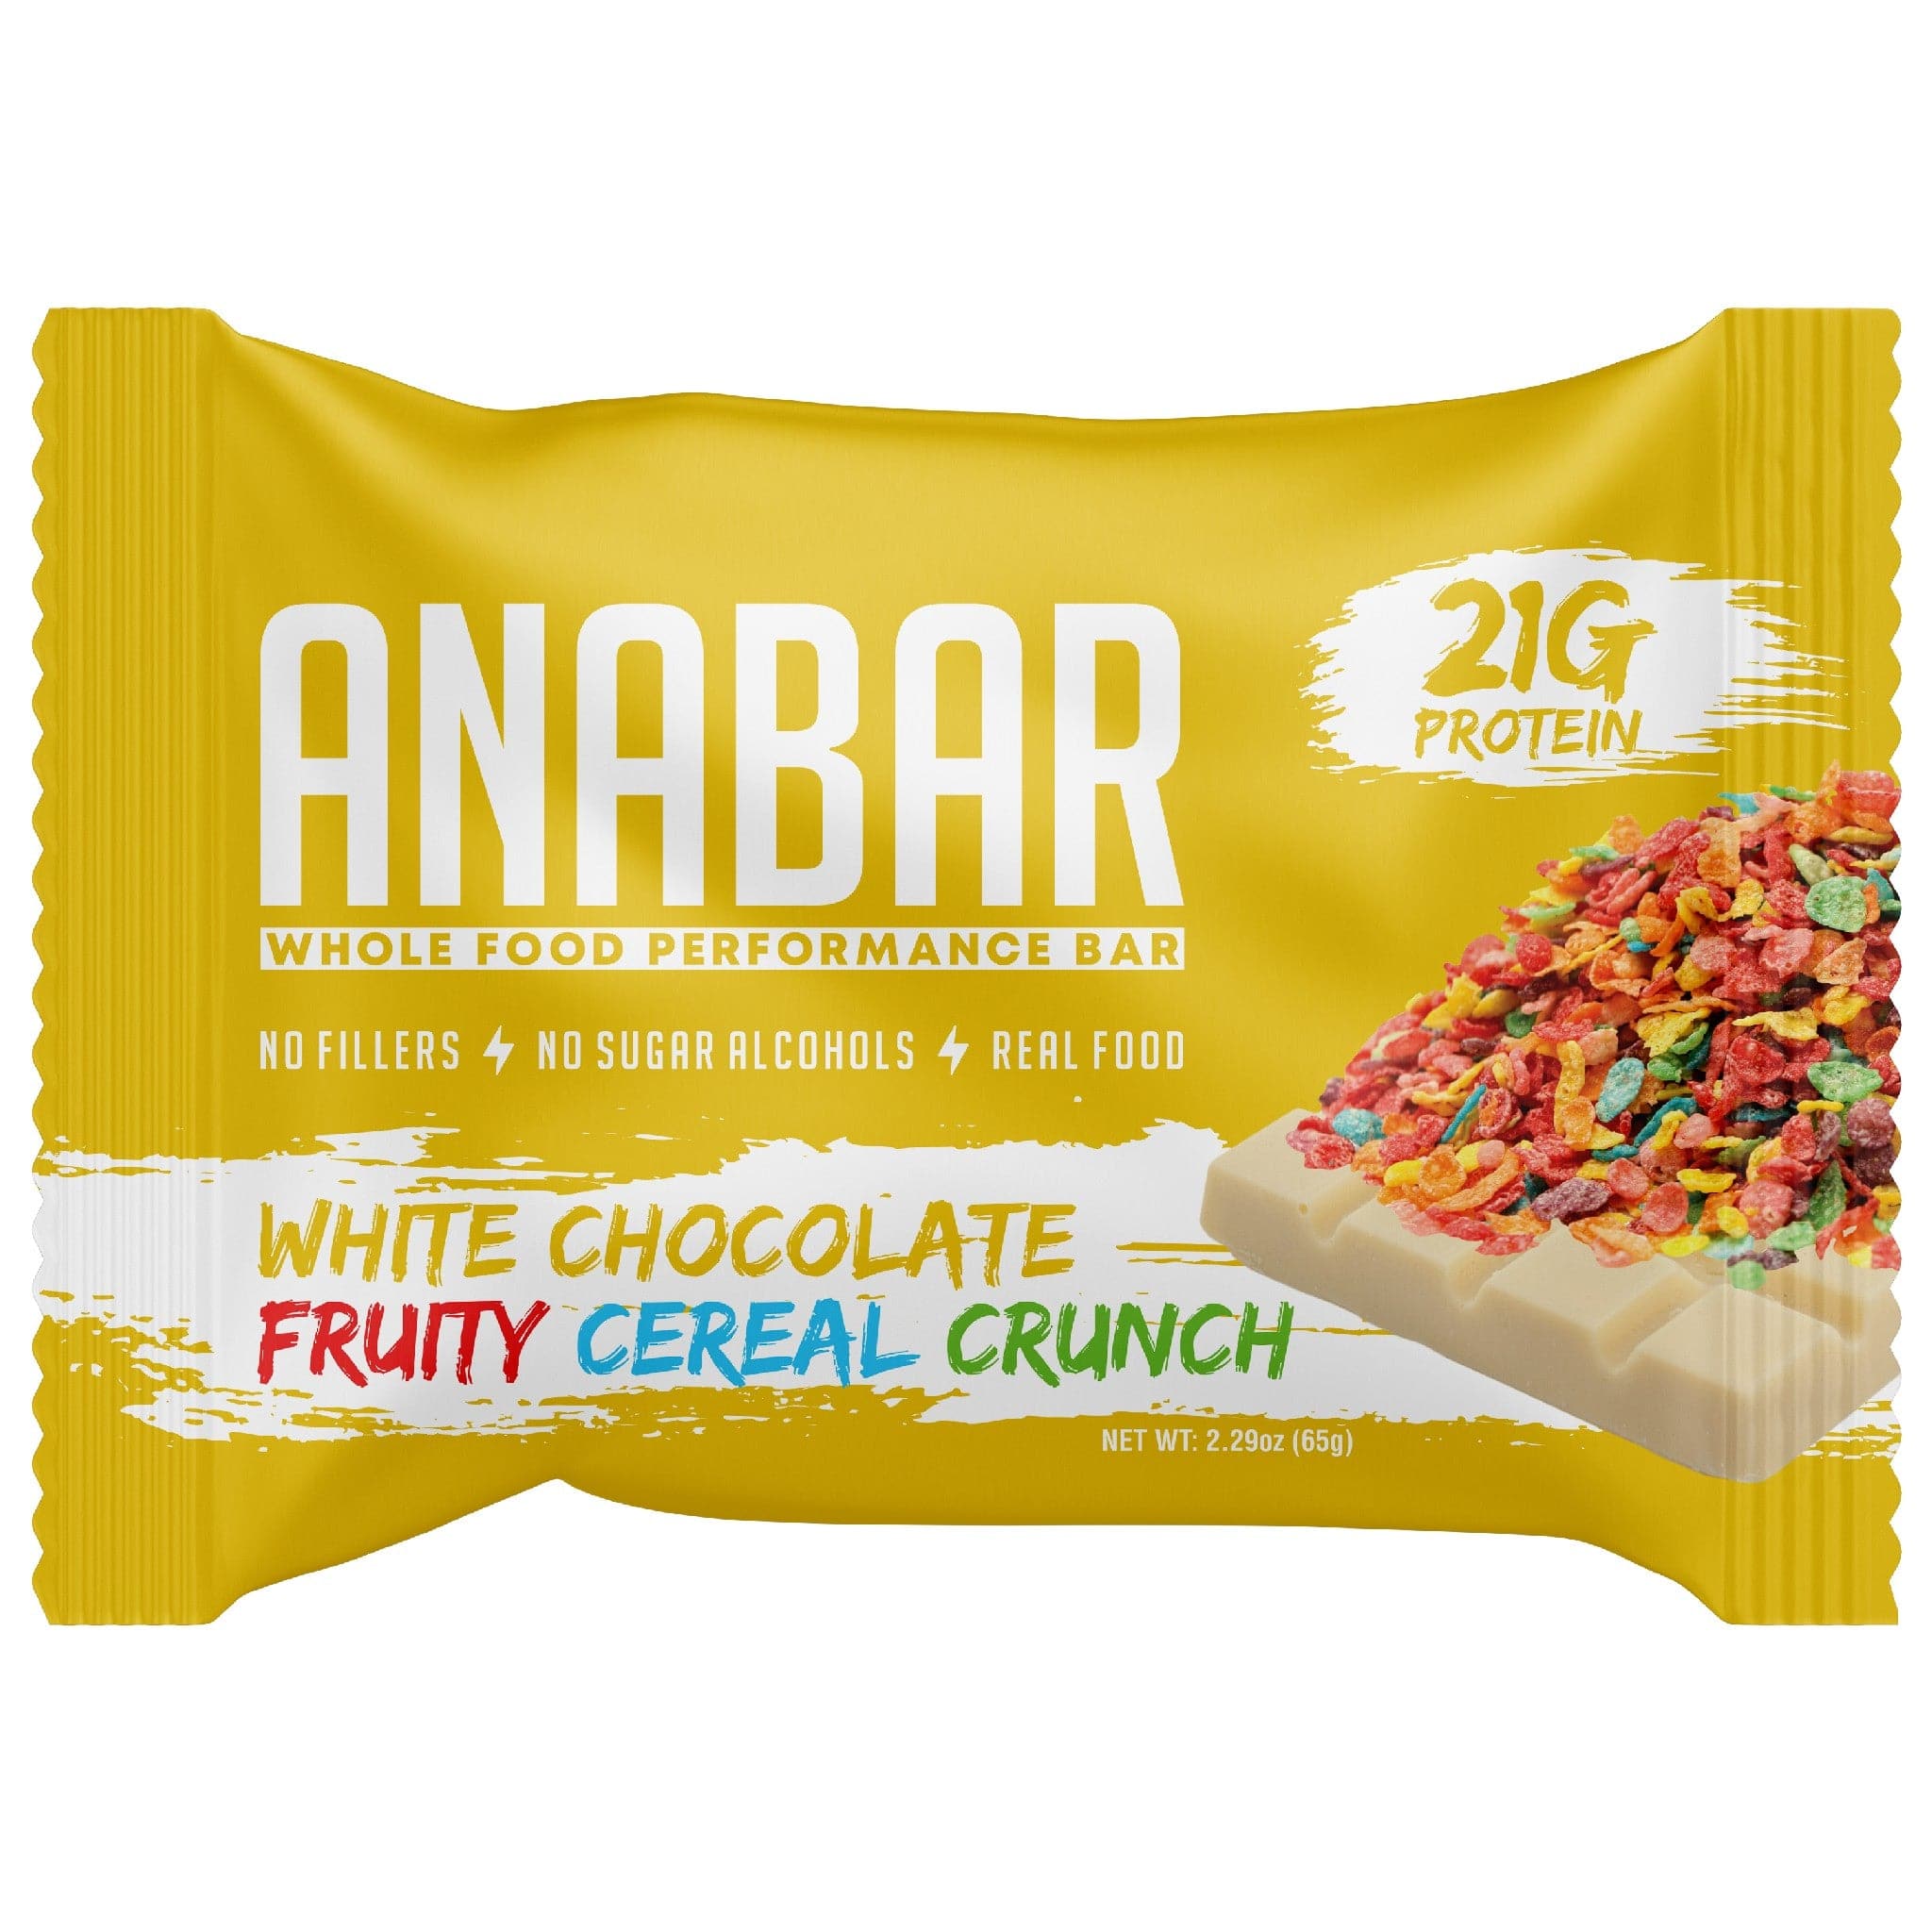 Anabar Protein Bar single